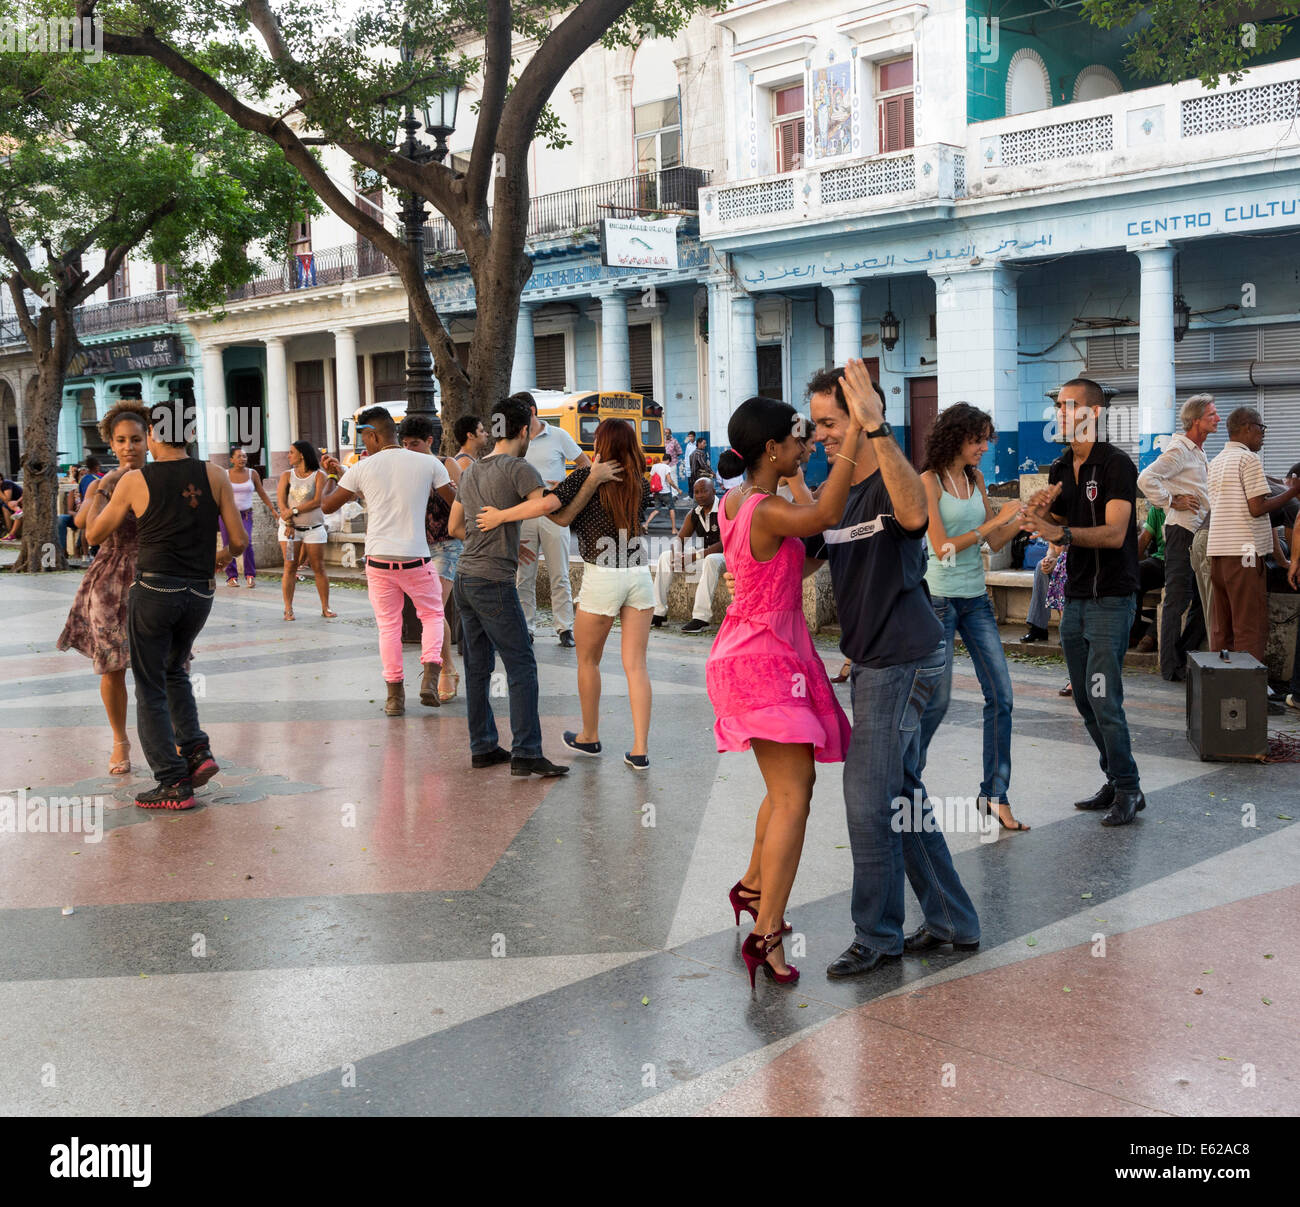 dancers on a Sunday evening, Prado avenue, Havana, Cuba Stock Photo